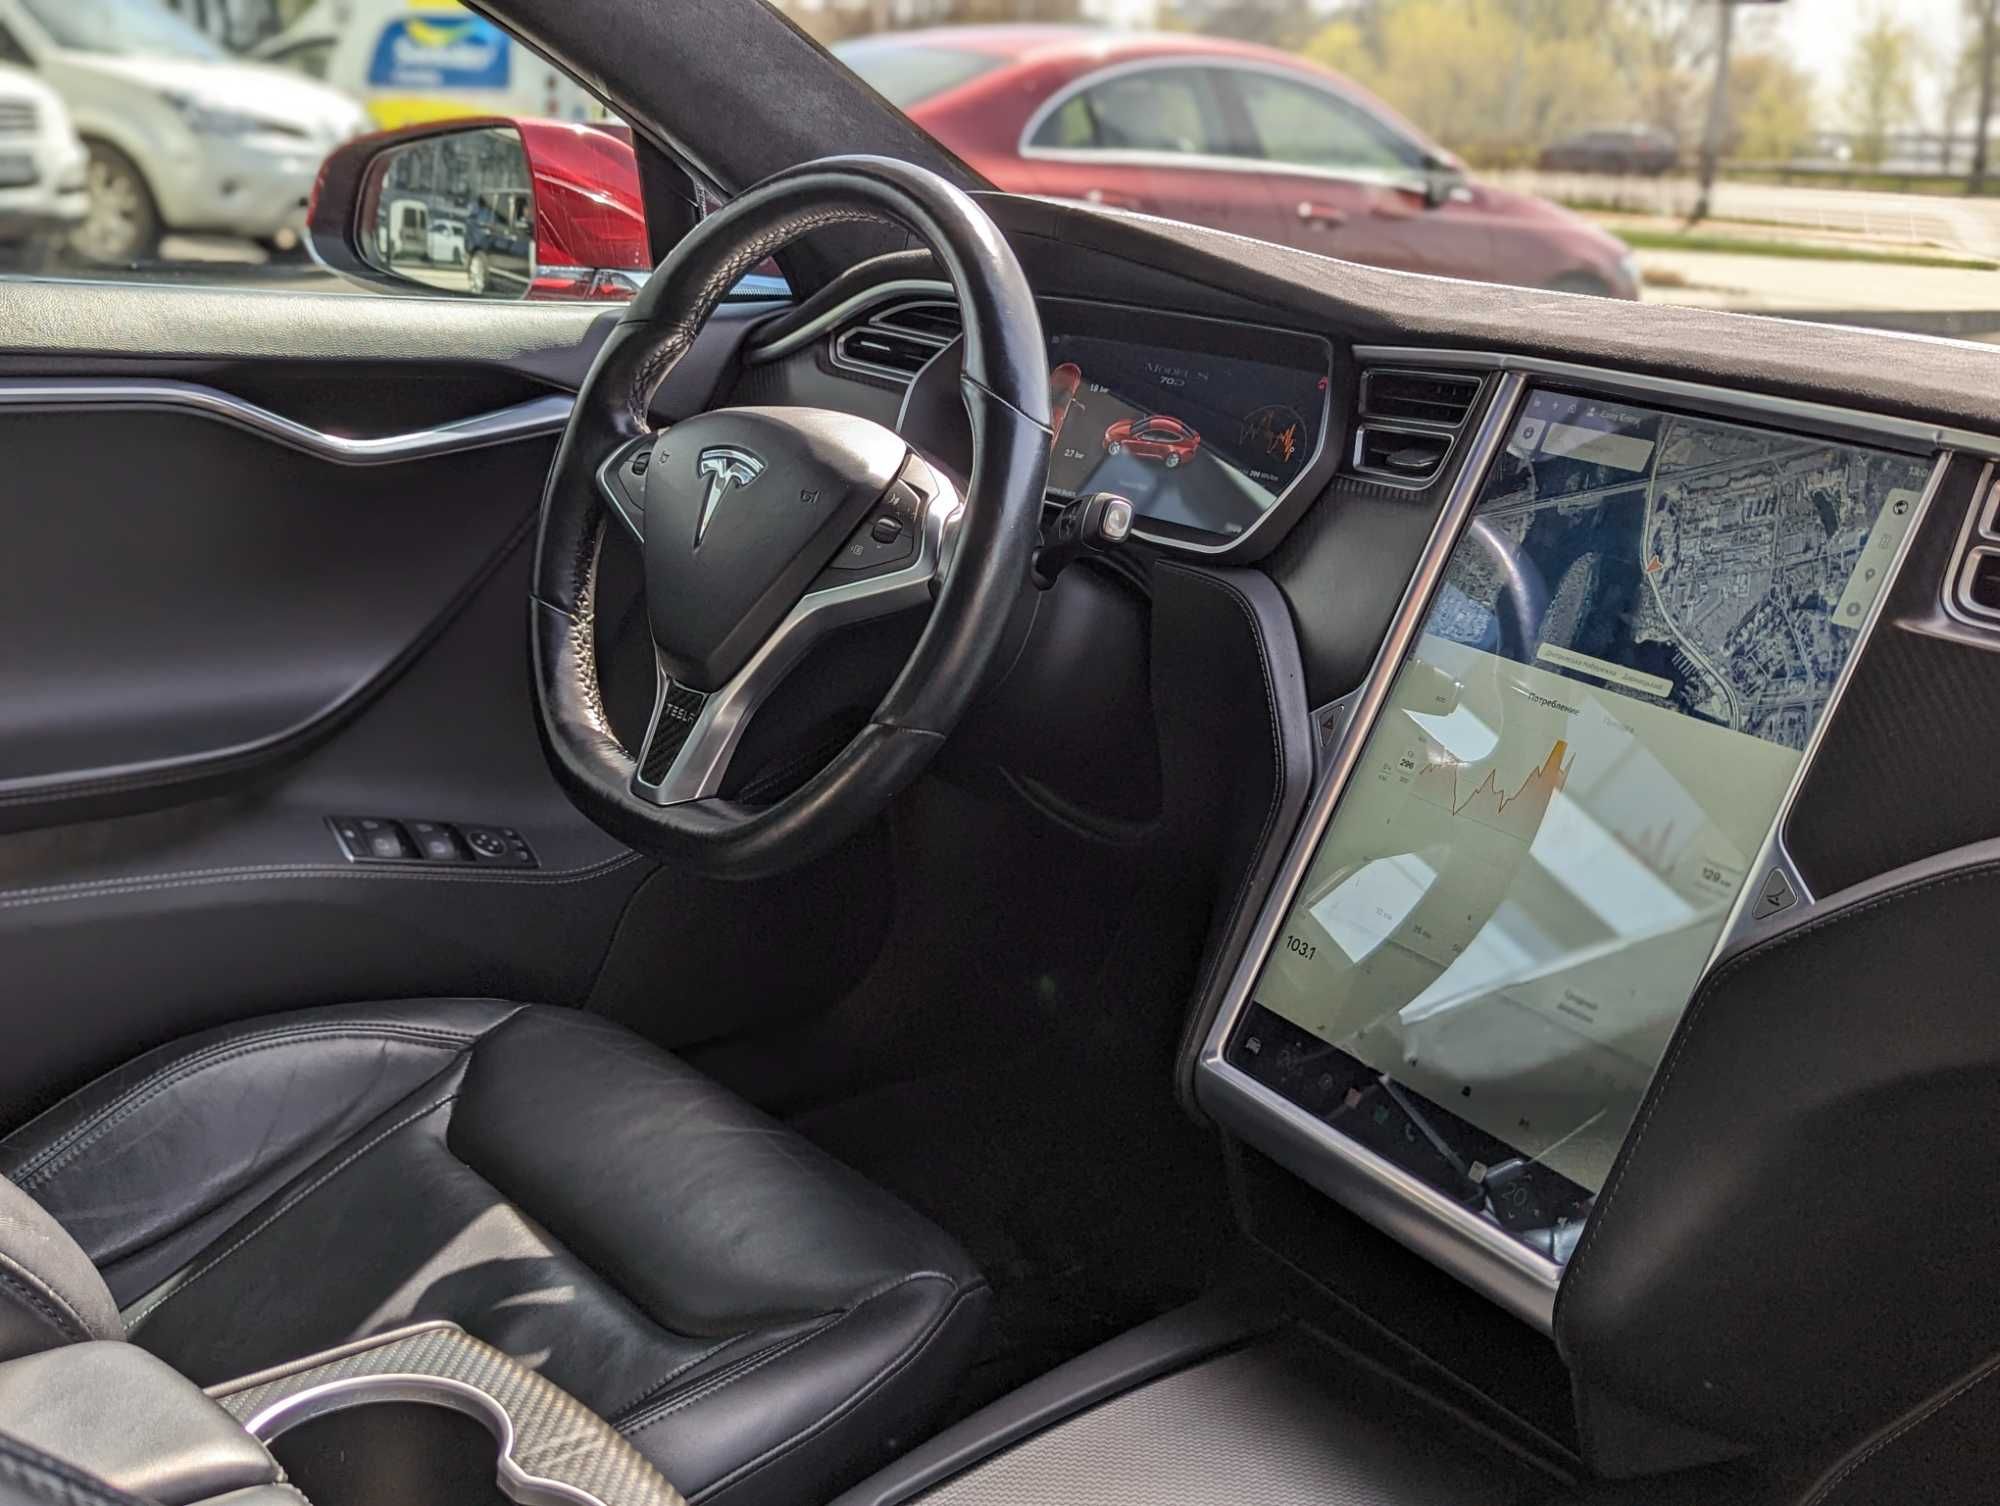 Продається Tesla Model S 2015 70D у кредит, розстрочку, на виплату.